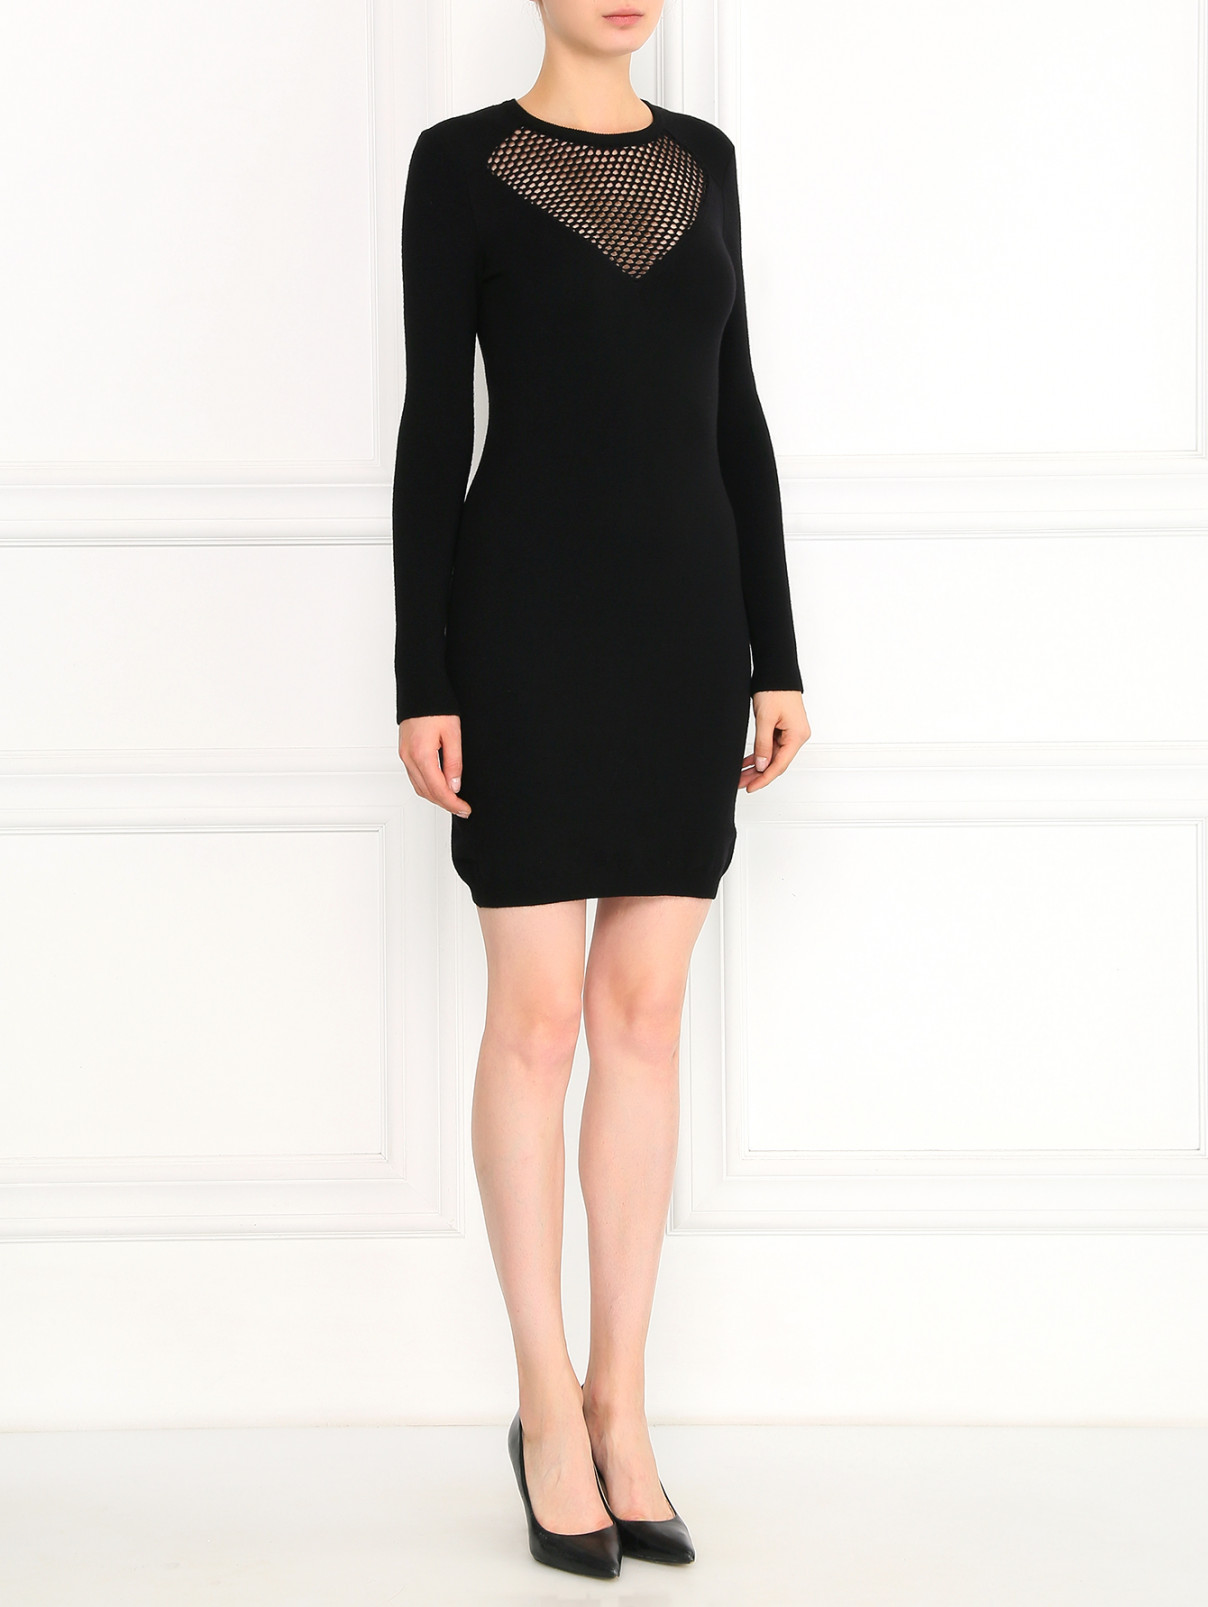 Платье из шерсти Moschino Cheap&Chic  –  Модель Общий вид  – Цвет:  Черный